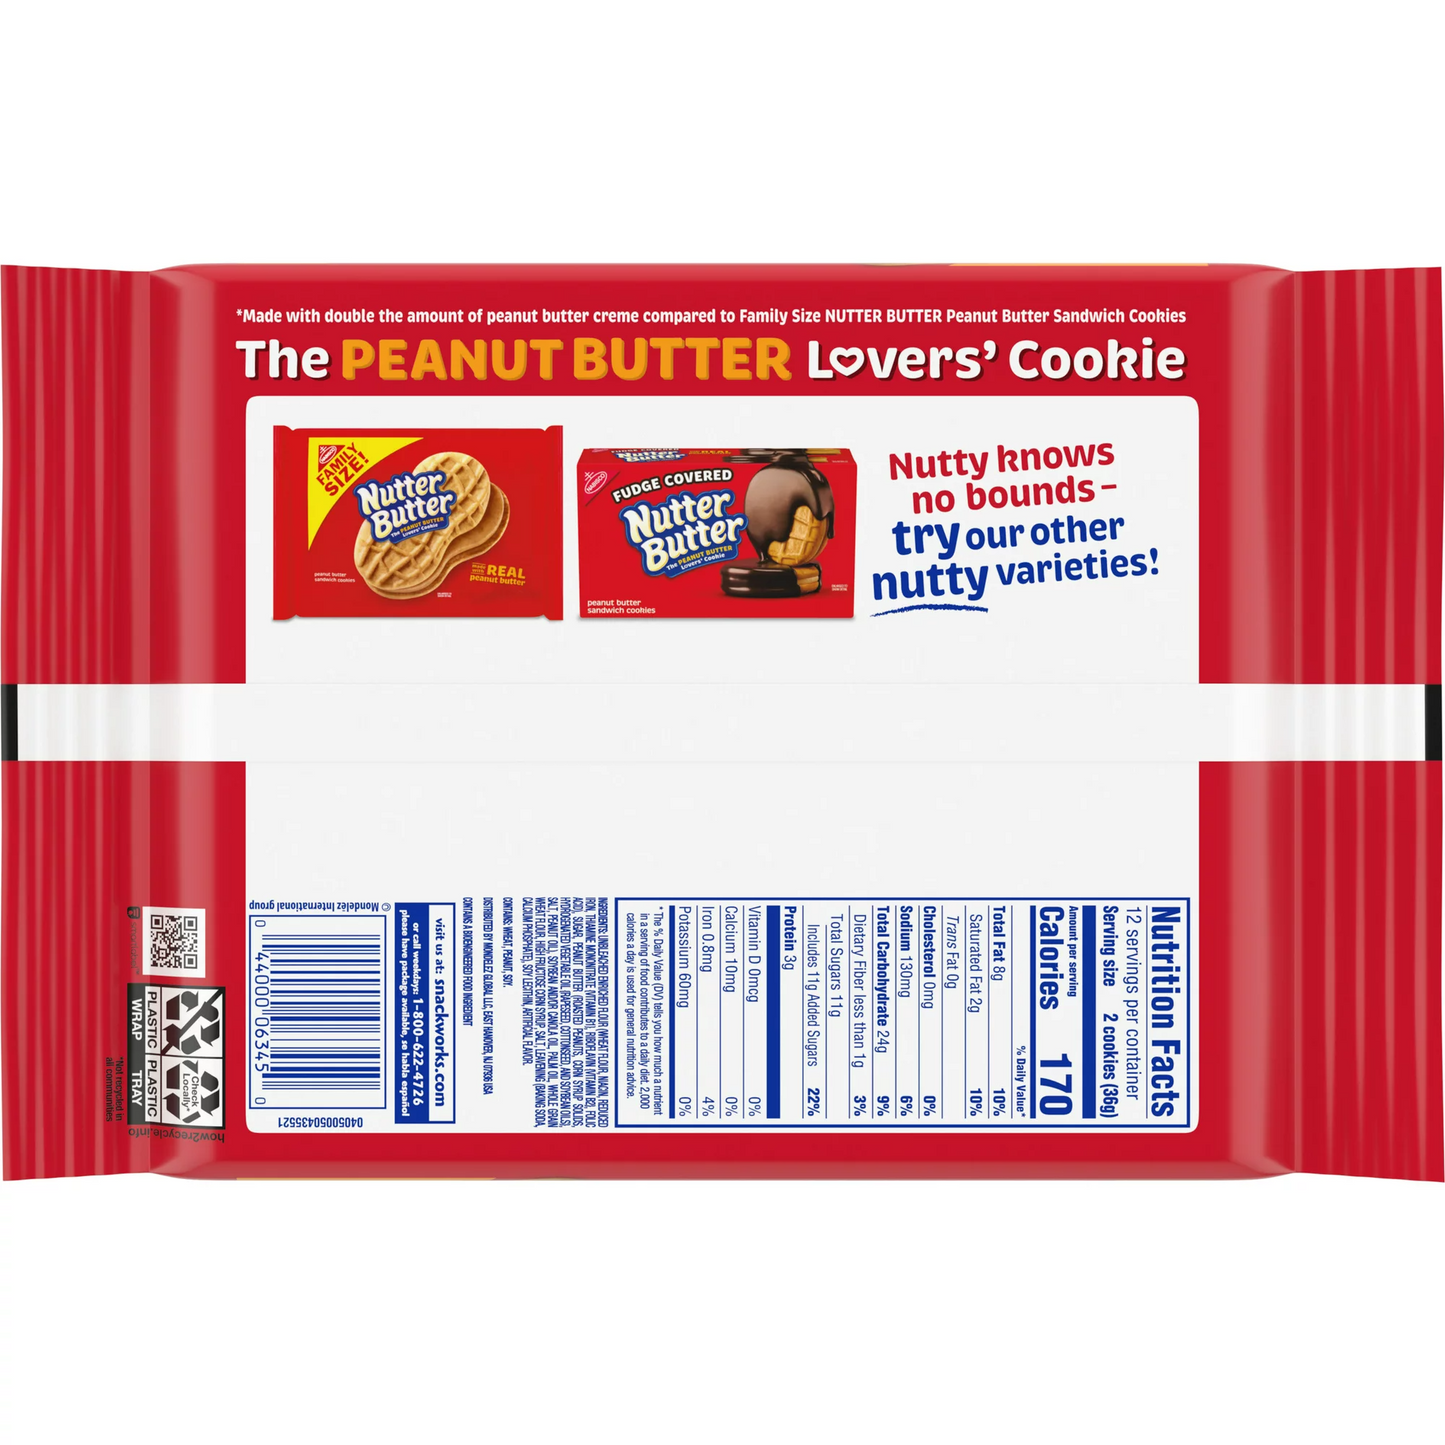 Nutter Butter Double Nutty Peanut Butter Sandwich Cookies